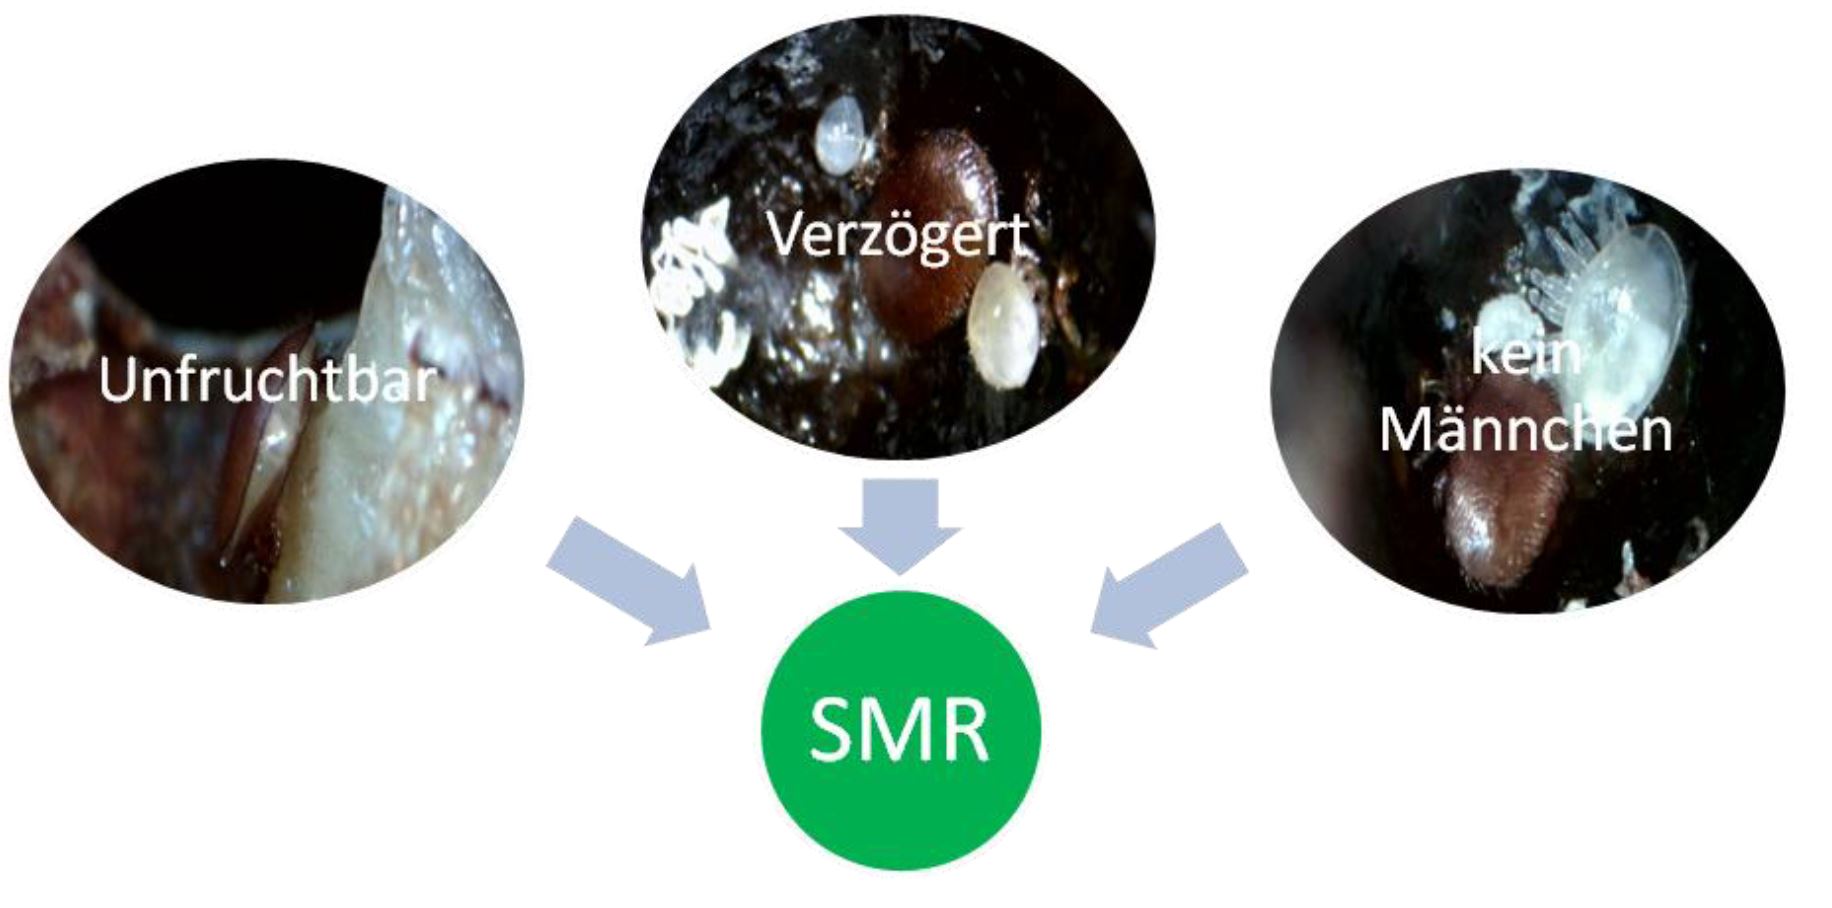 SMR erklährt veringerte Reproduktion der Varroamilbe